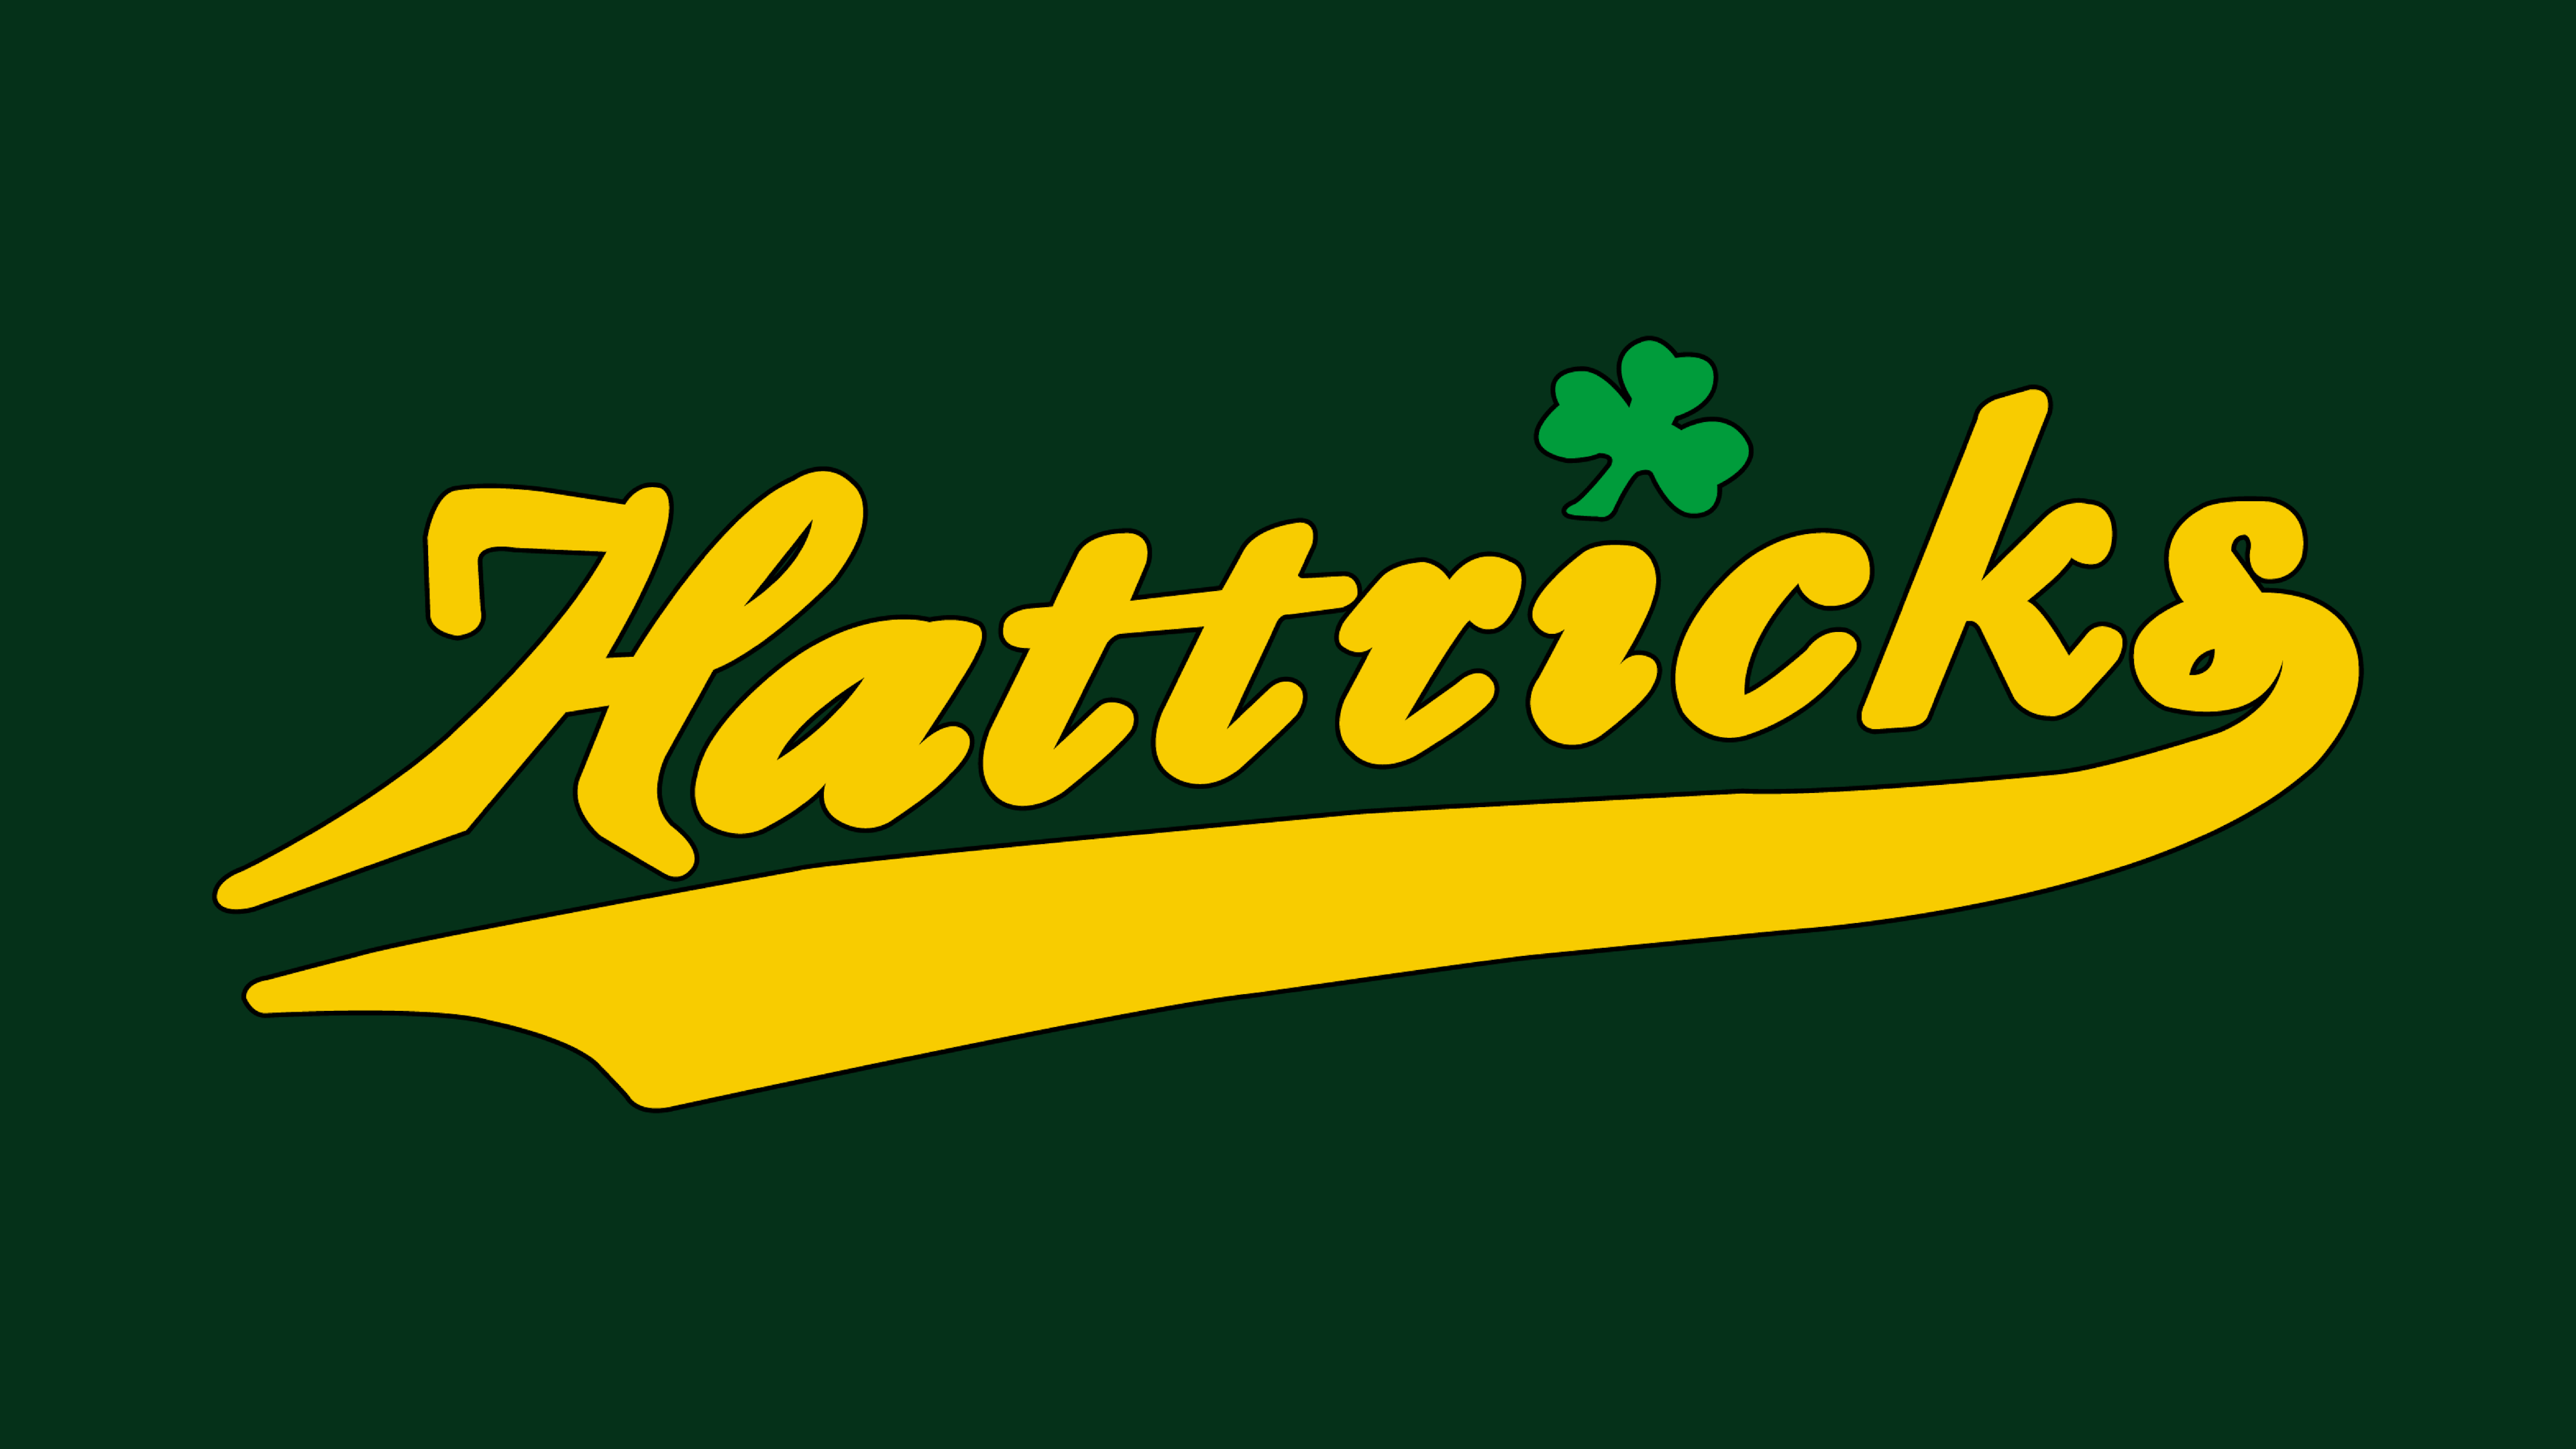 Hattricks